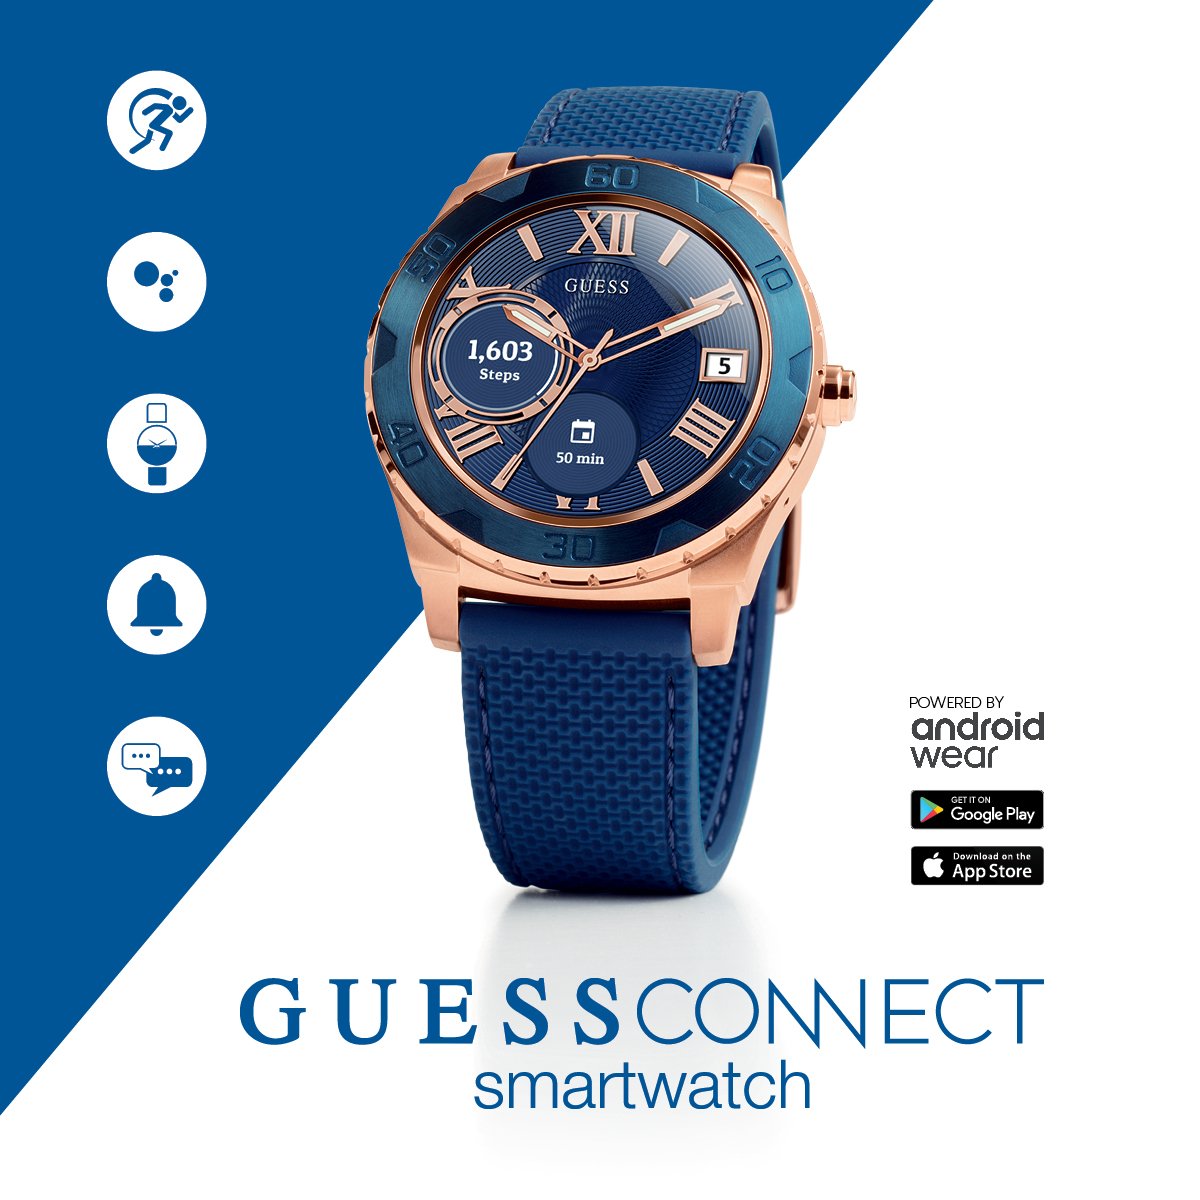 guess smartwatch 2018